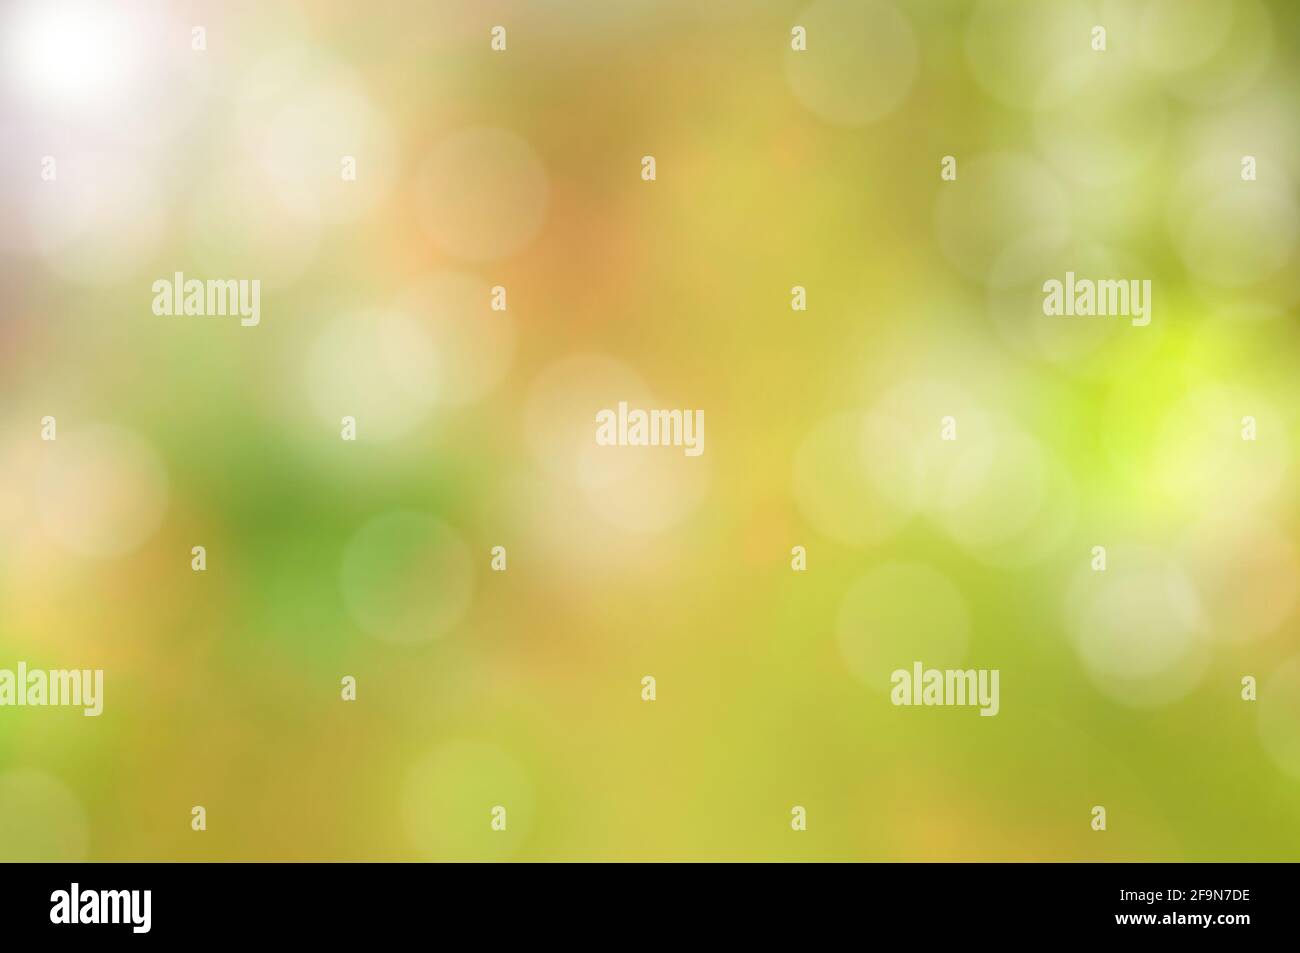 Abstrakter, farbenprächtiger grüner Hintergrund mit Bokeh- oder Streulicht-Effekt Stockfoto